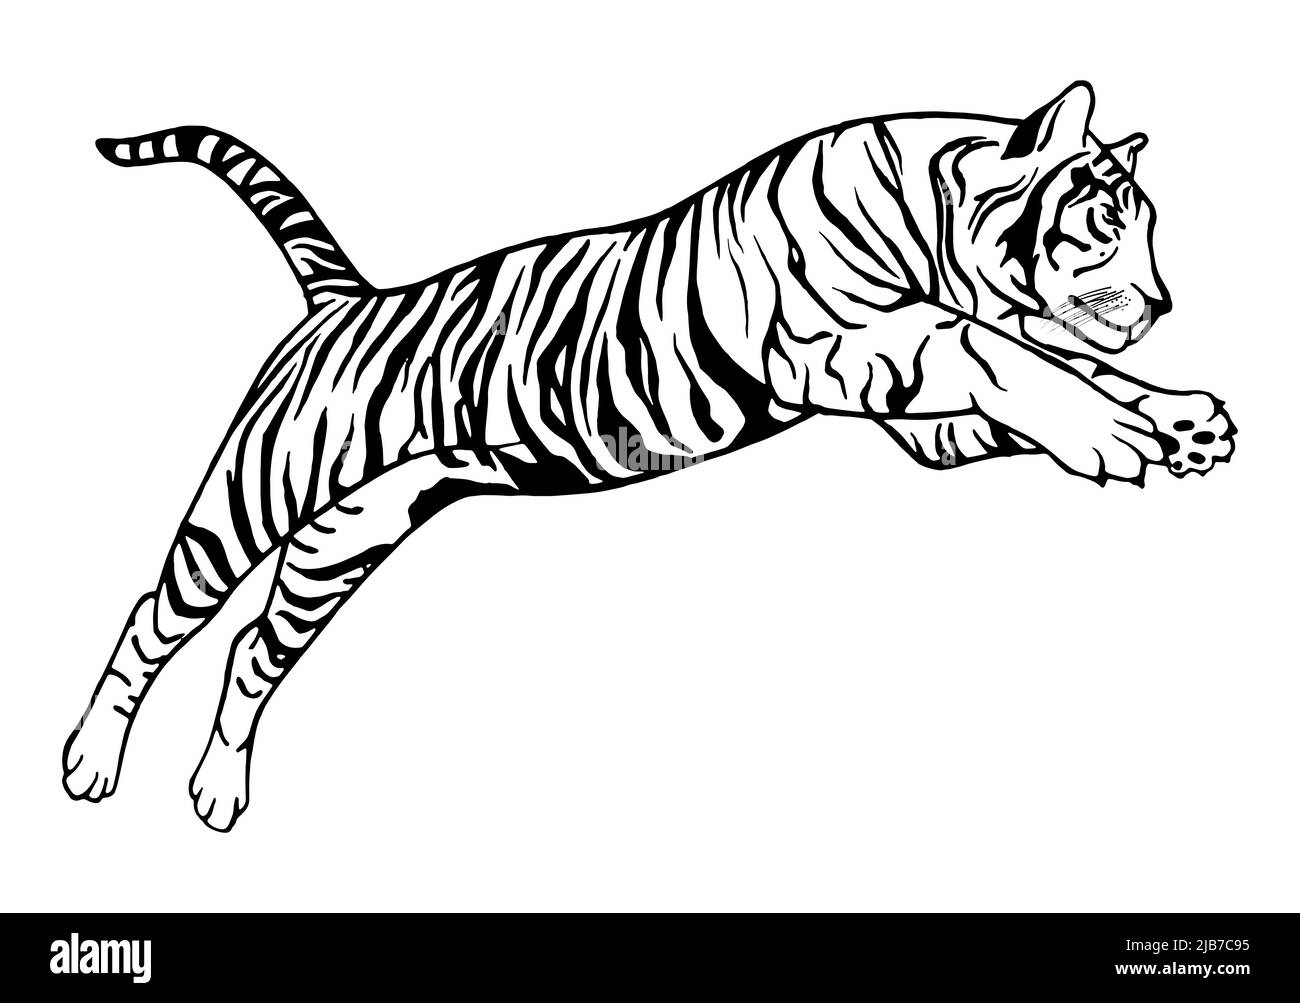 Tigre bondissant - tatouage vectoriel, illustration dessinée à la main. Jeu de dessins vectoriels japonais chinois tigre 2022. Symbole chinois nouvel an 2022. Illustration de Vecteur